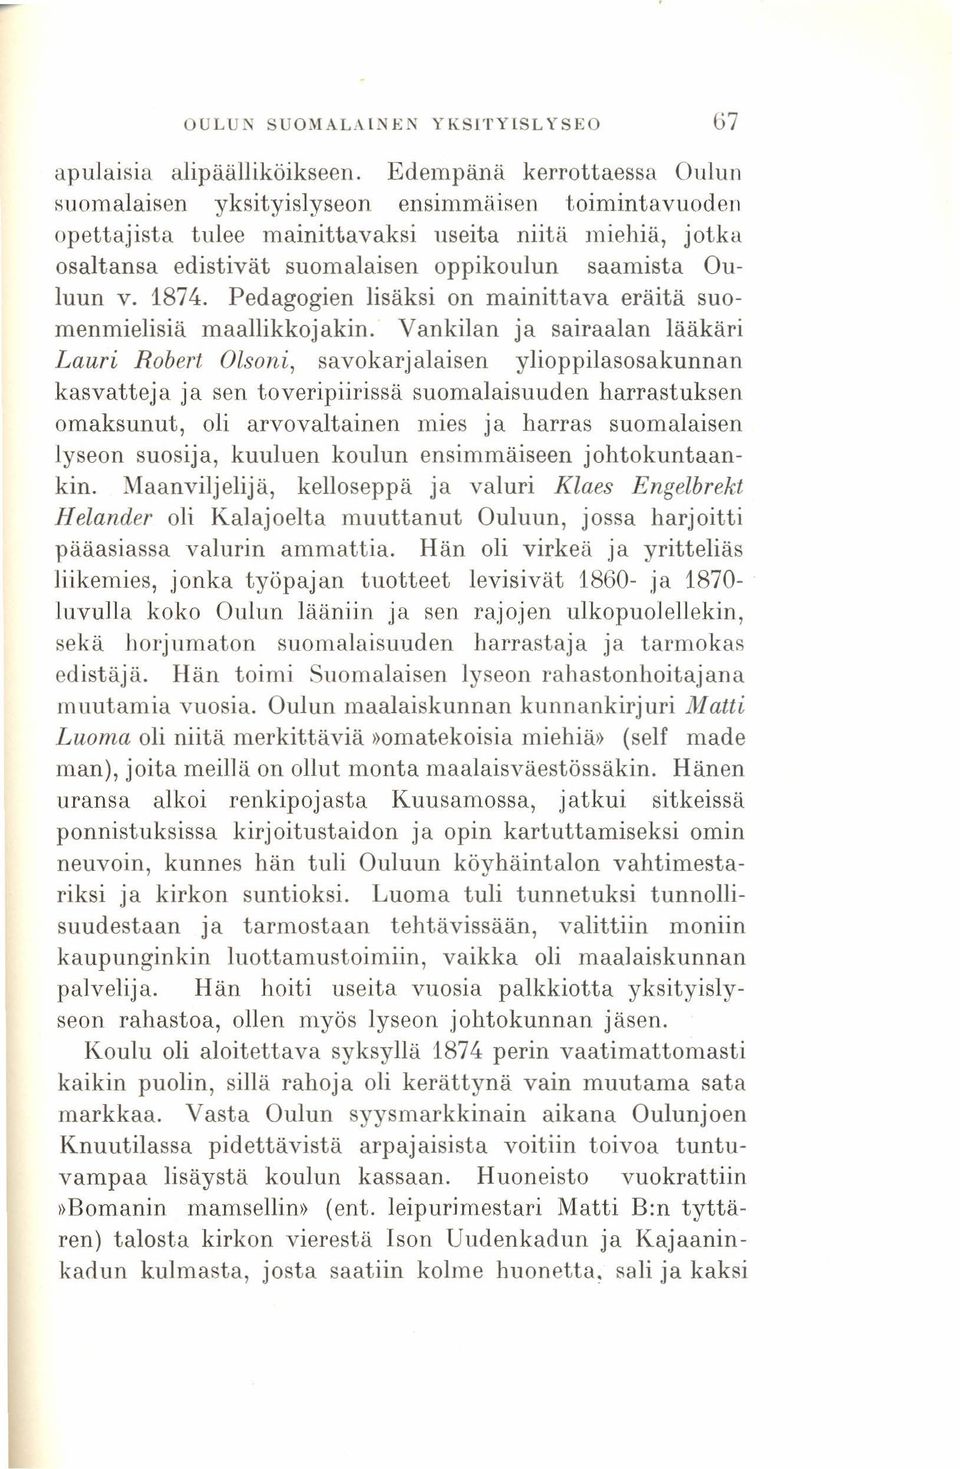 v. 1874. Pedagogien lisäksi on mainittava eräitä suomenmielisiä maallikkojakin.